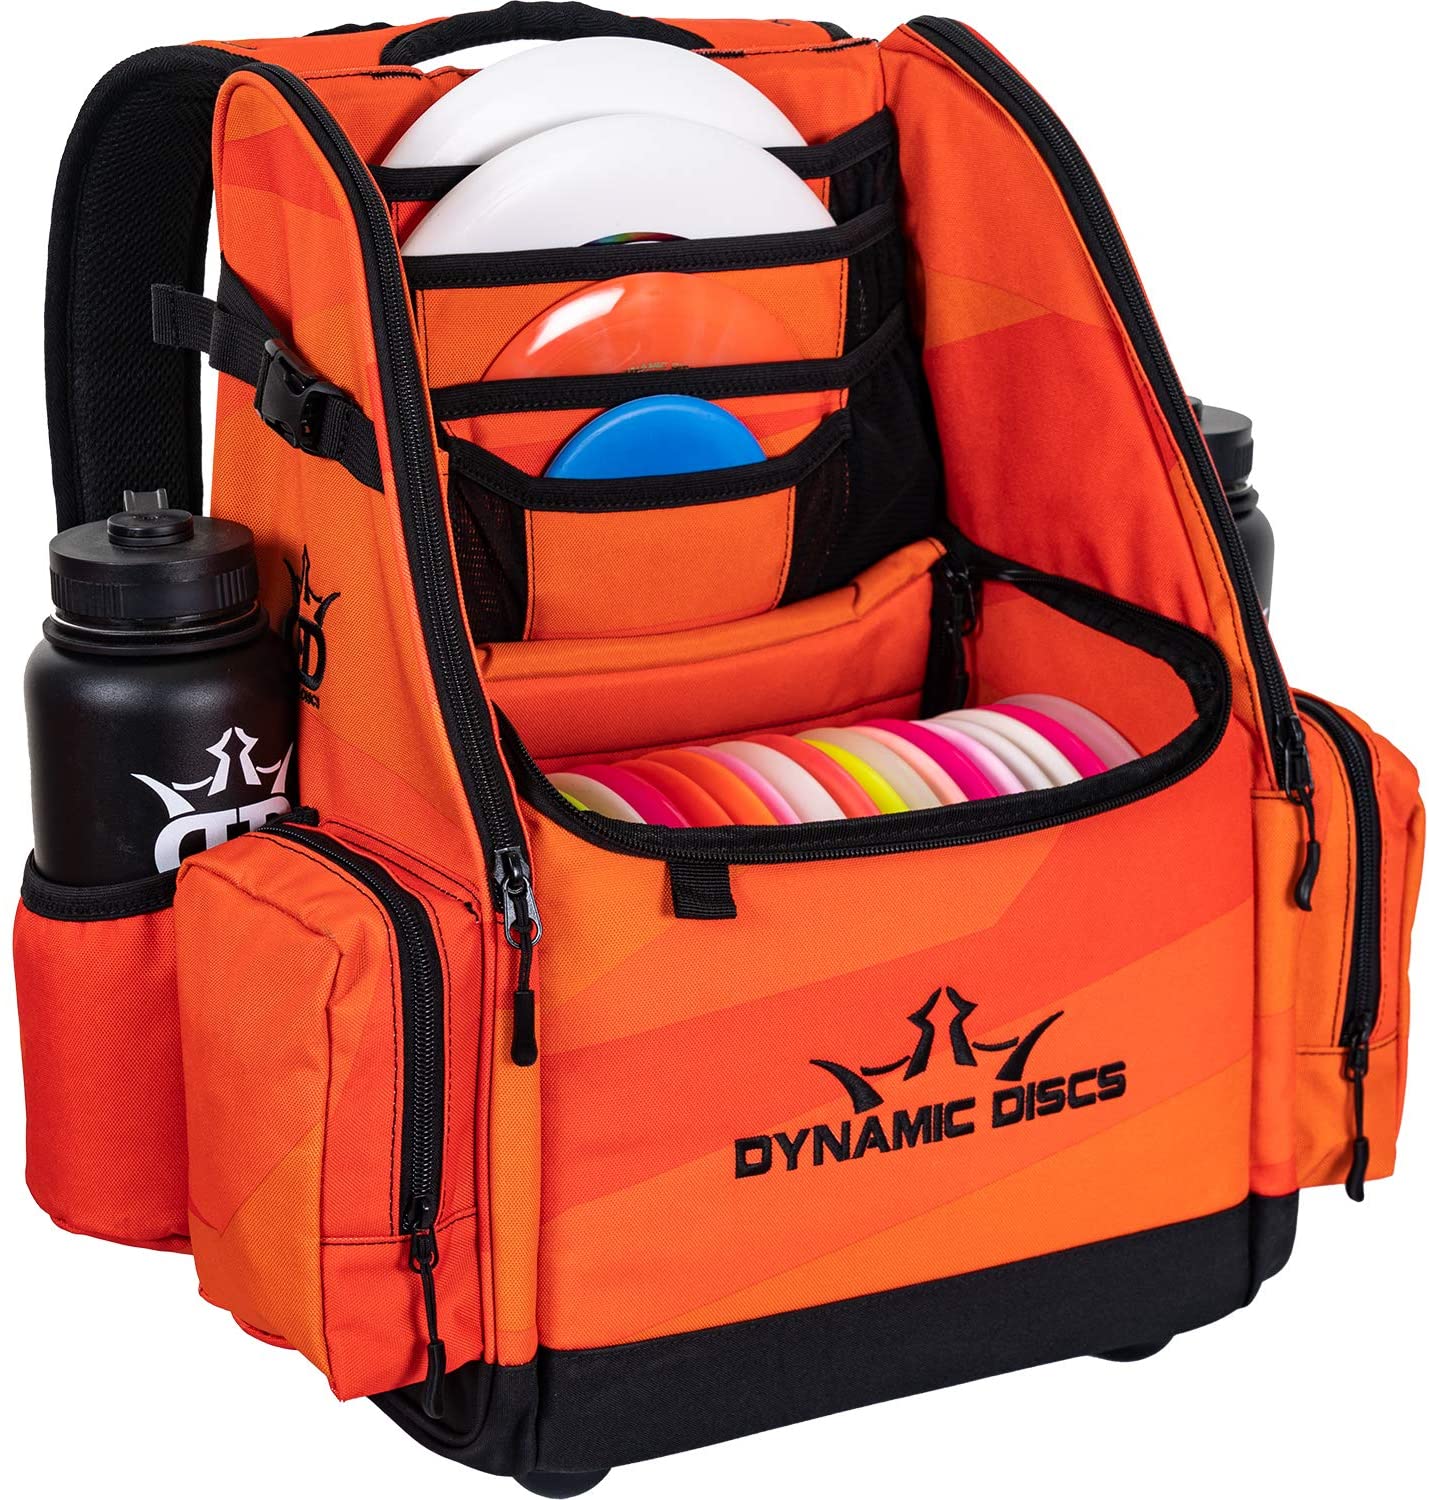 Dynamic Discs Commander Cooler Backpack Disc Golf Bag - Infrared Orange - Dynamic Discs